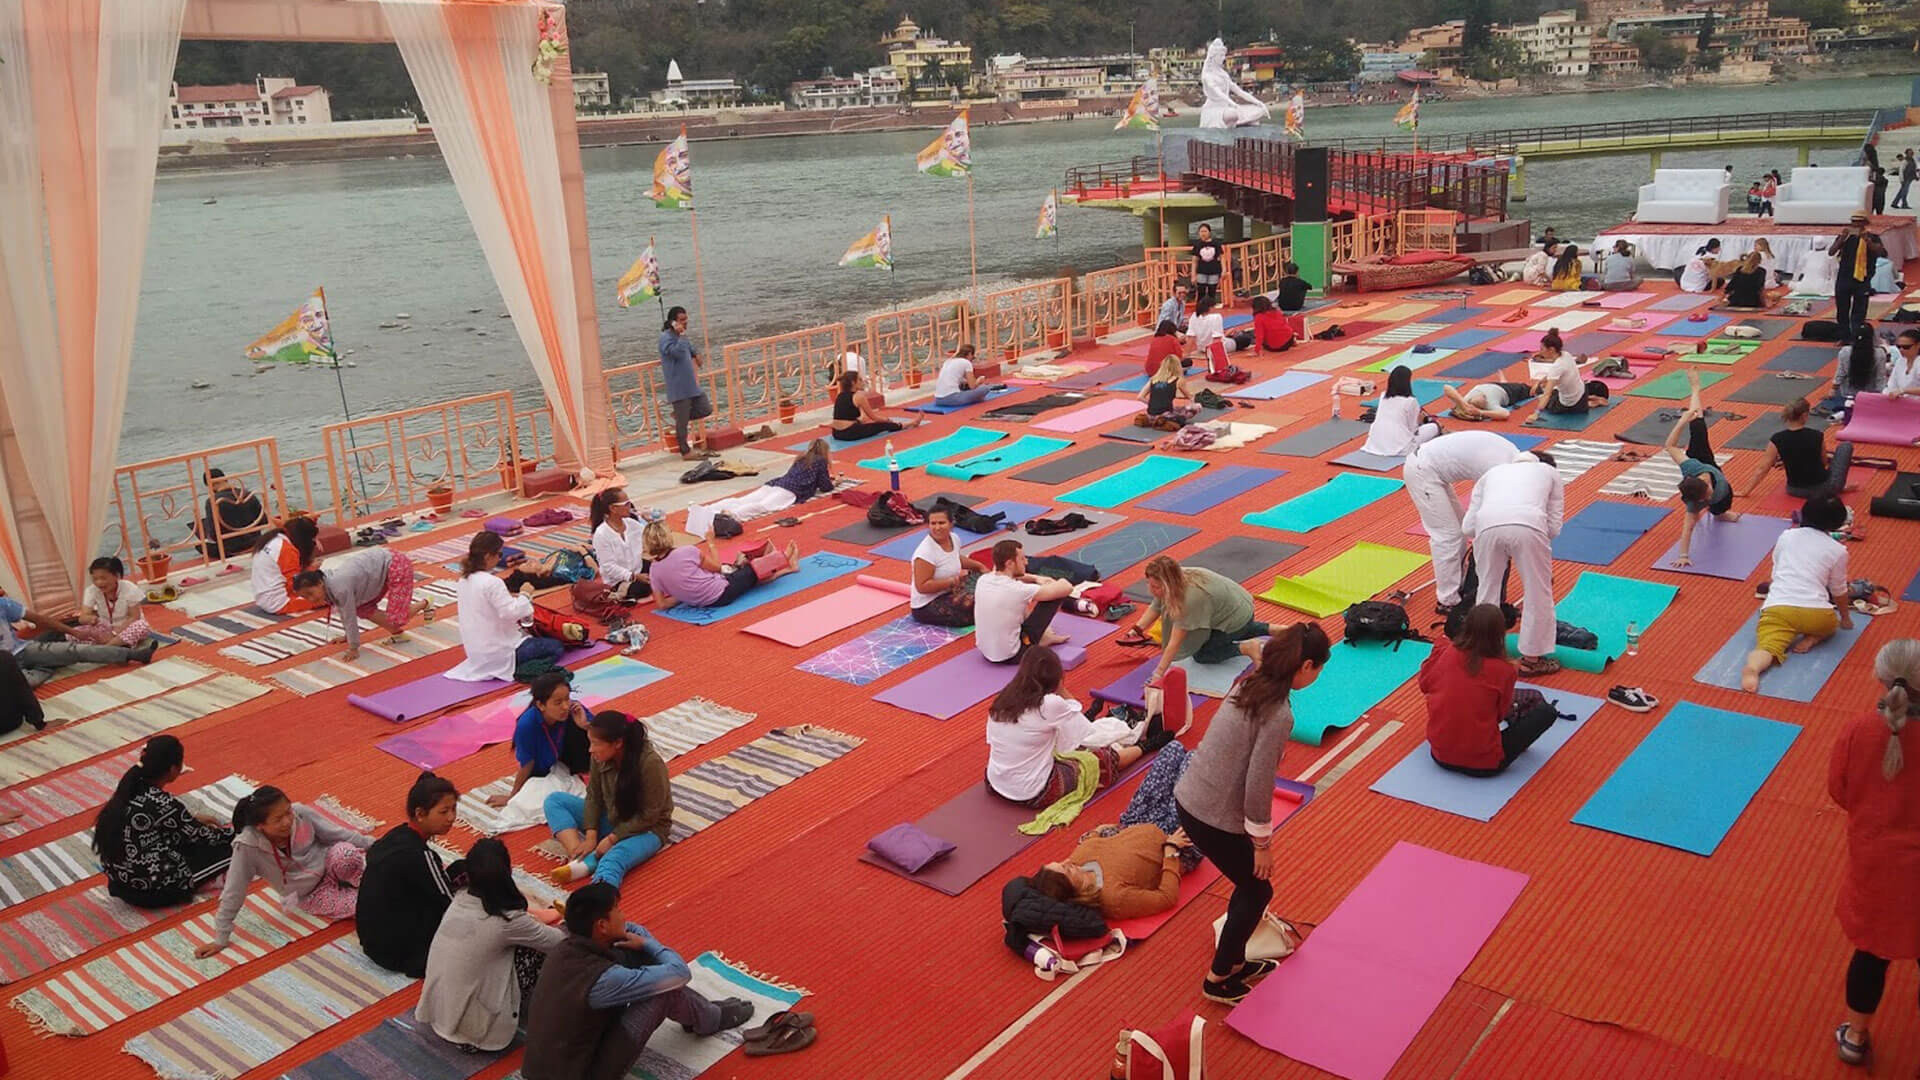 https://memorableindia.com/blog/wp-content/uploads/2019/02/International-Yoga-Festival.jpg